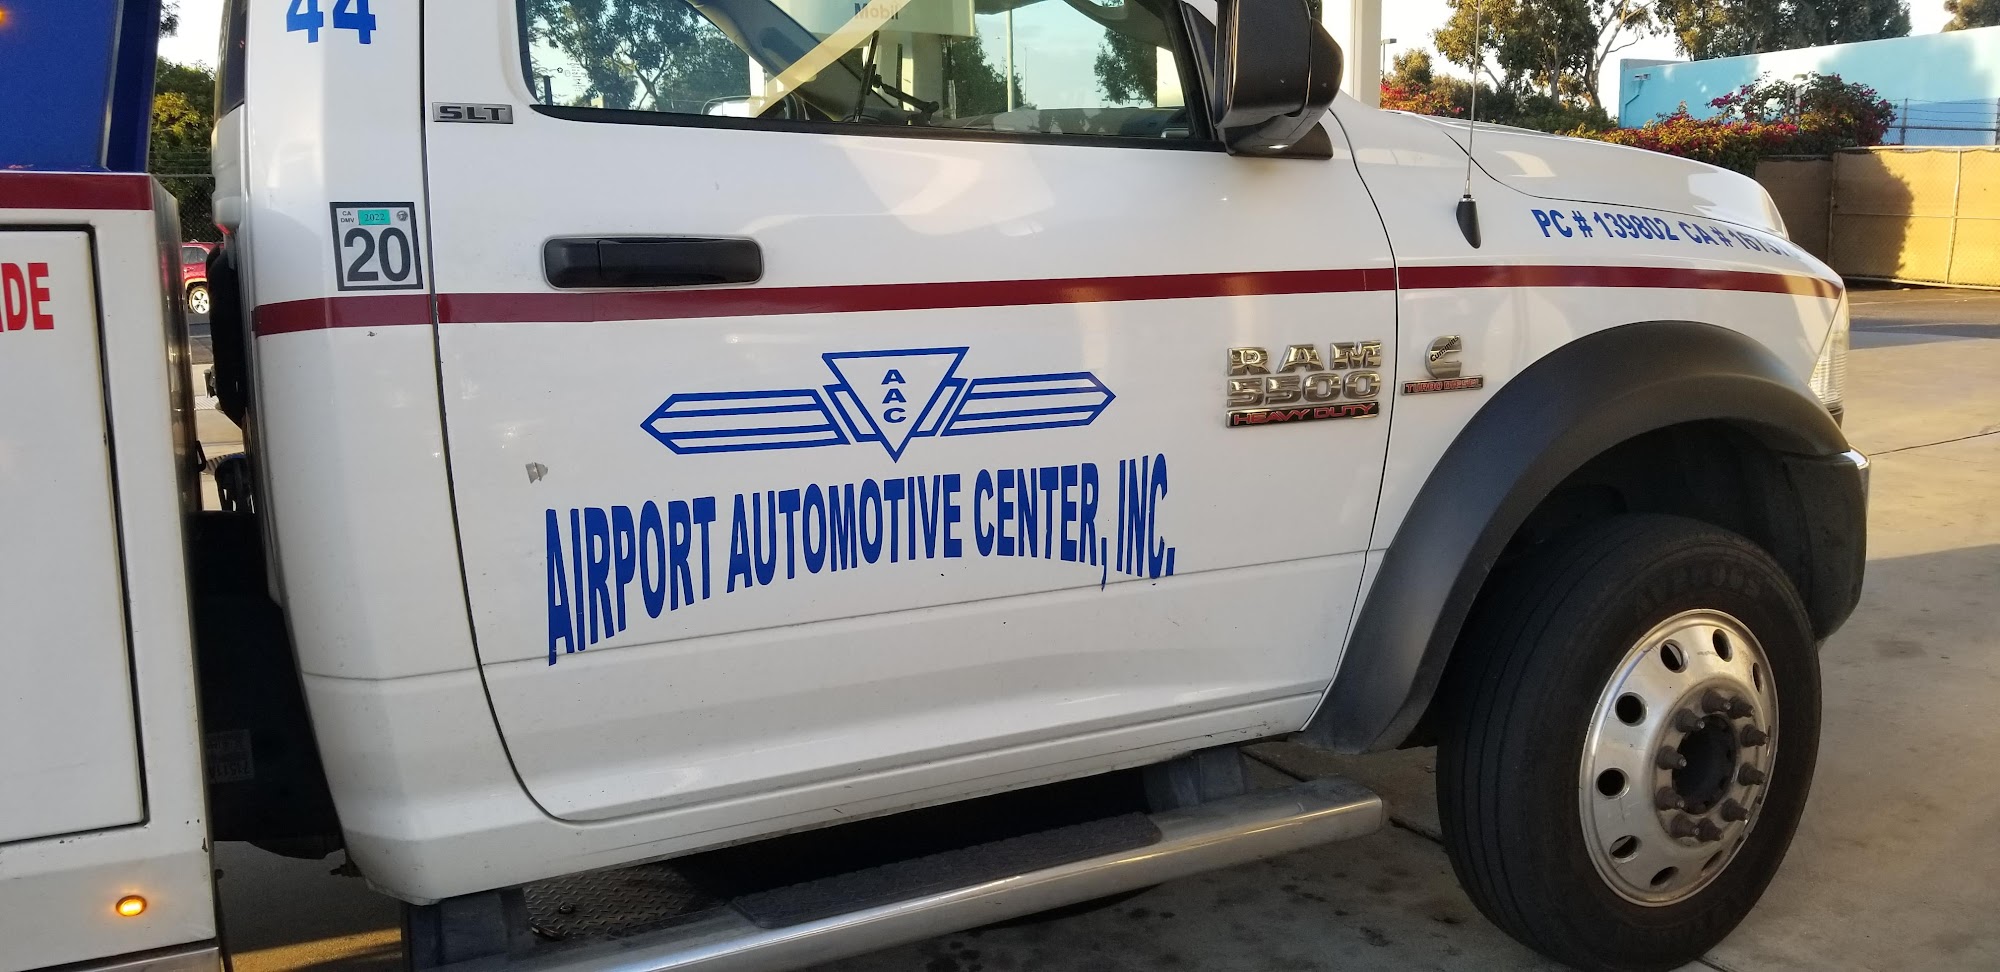 Airport Automotive Center, Inc.